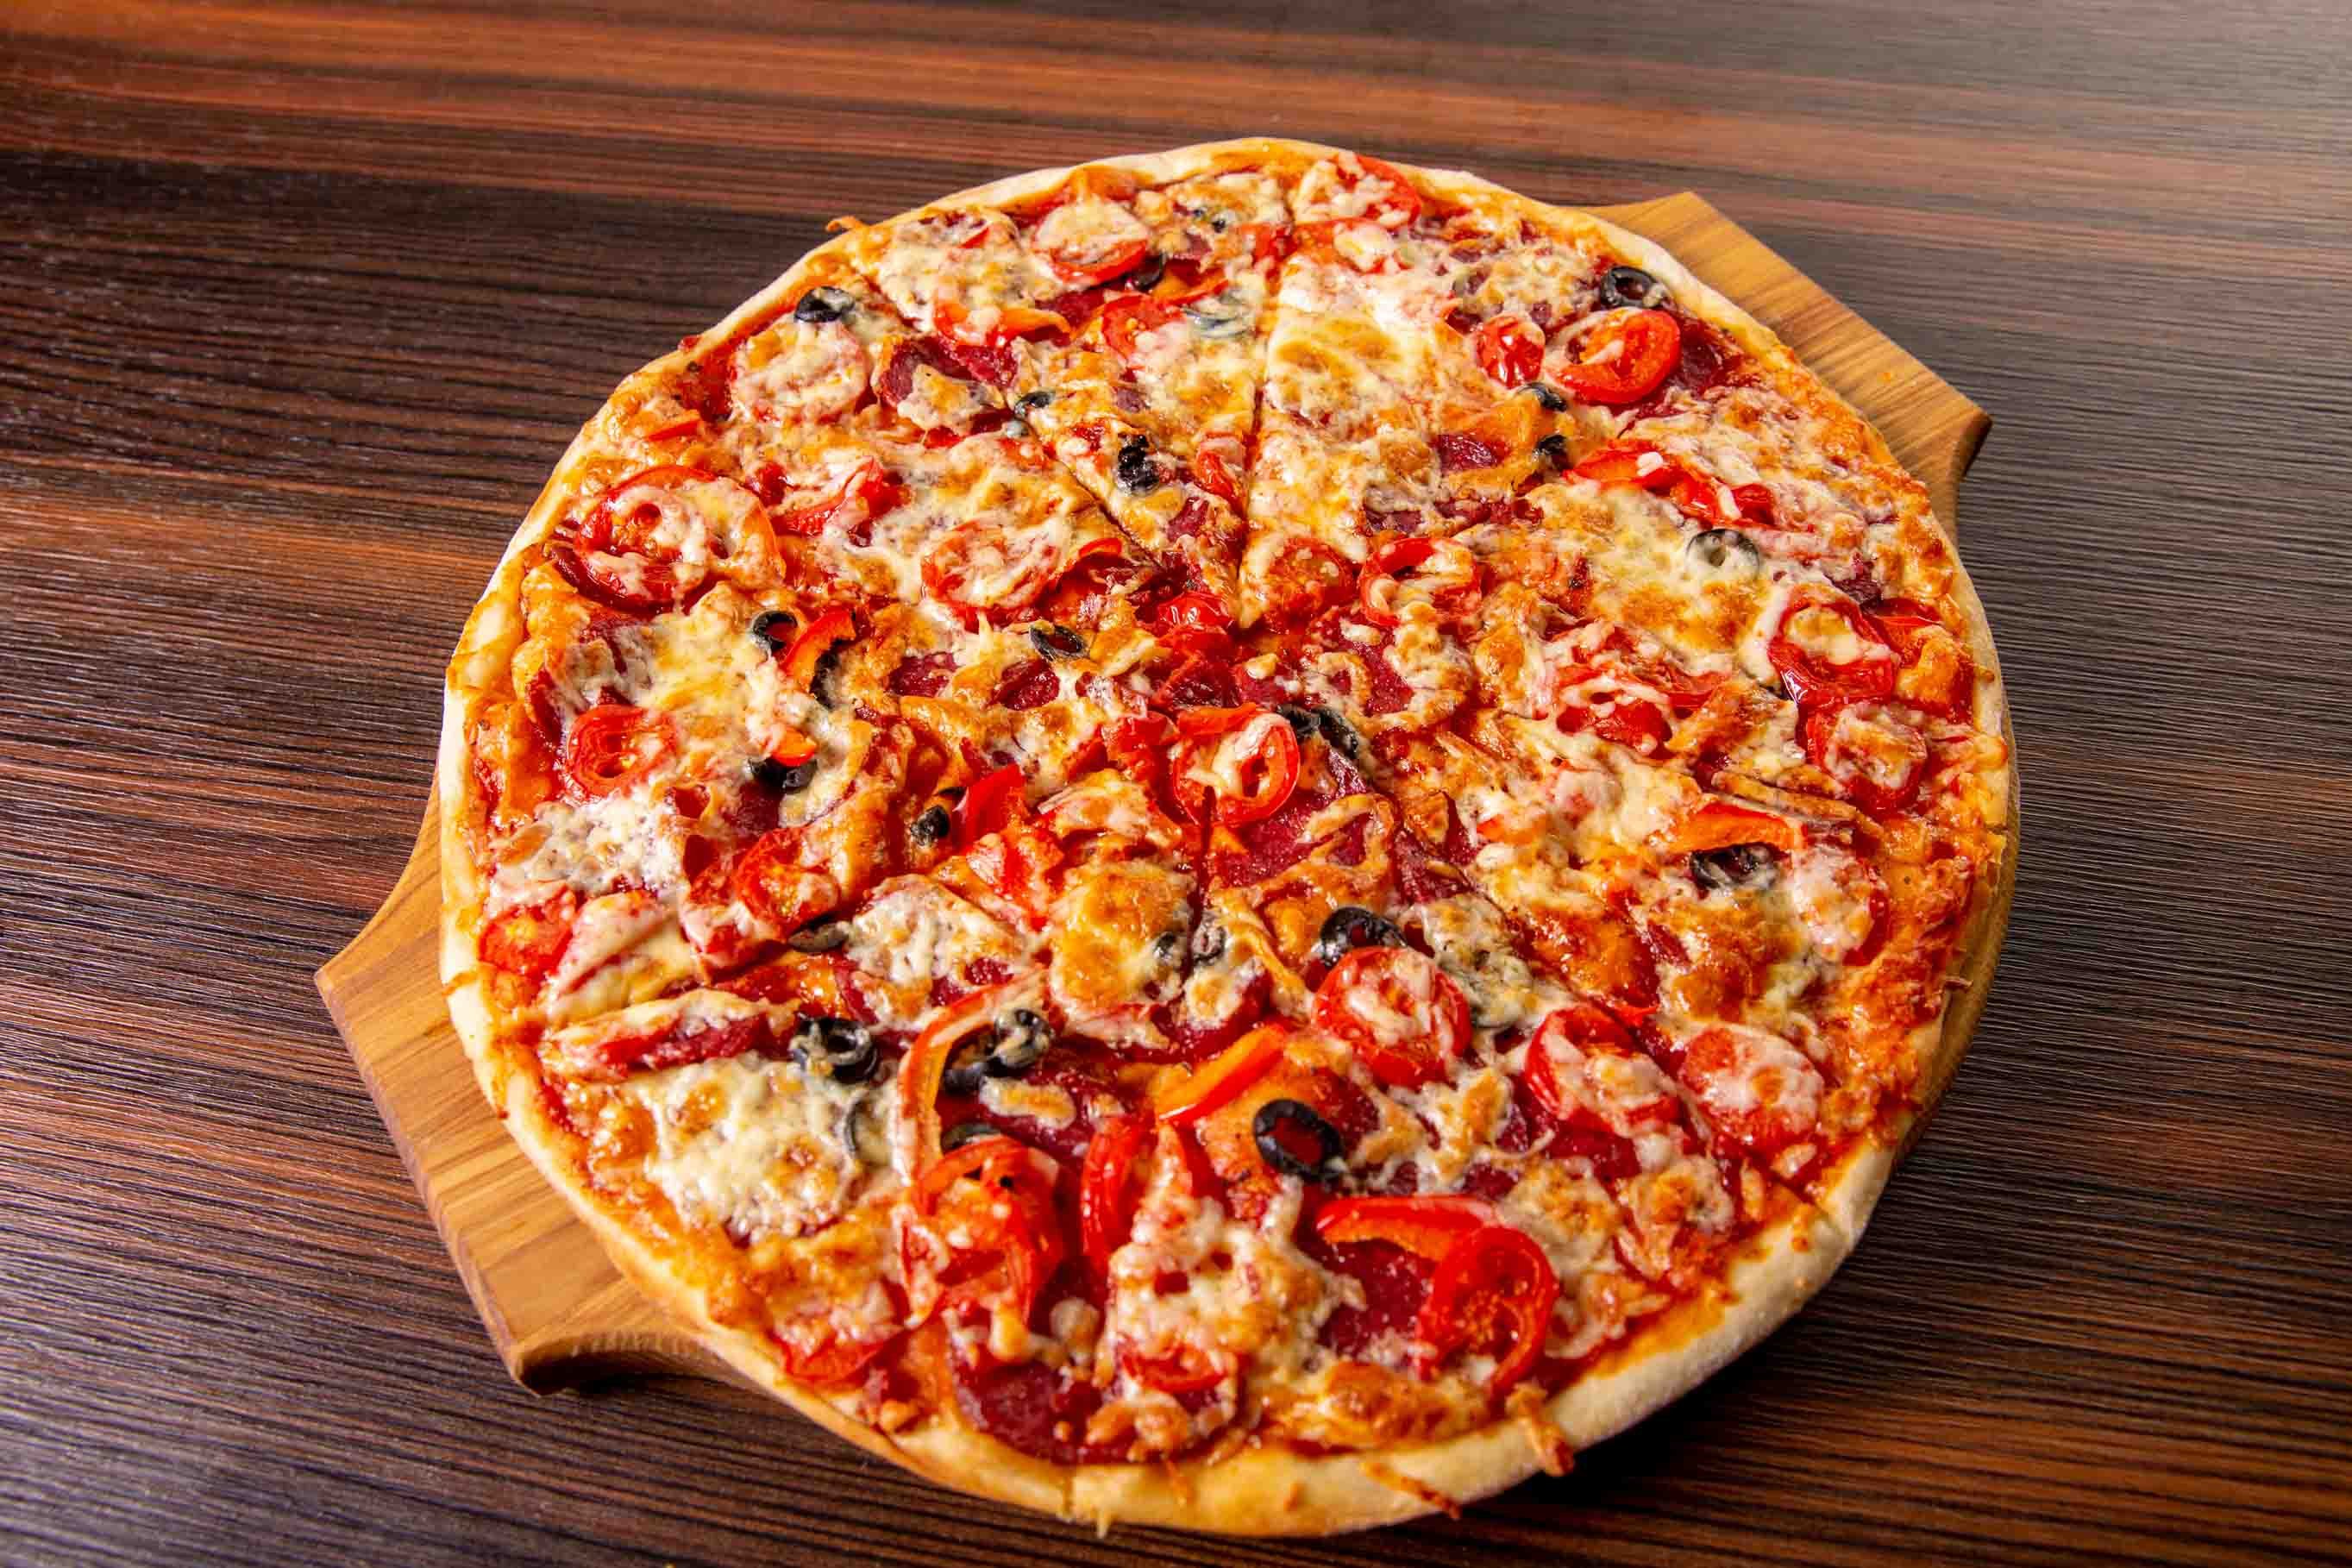 эй наконец то я могу попробовать пиццу путтанеска с соусом песто отличная пицца фото 103